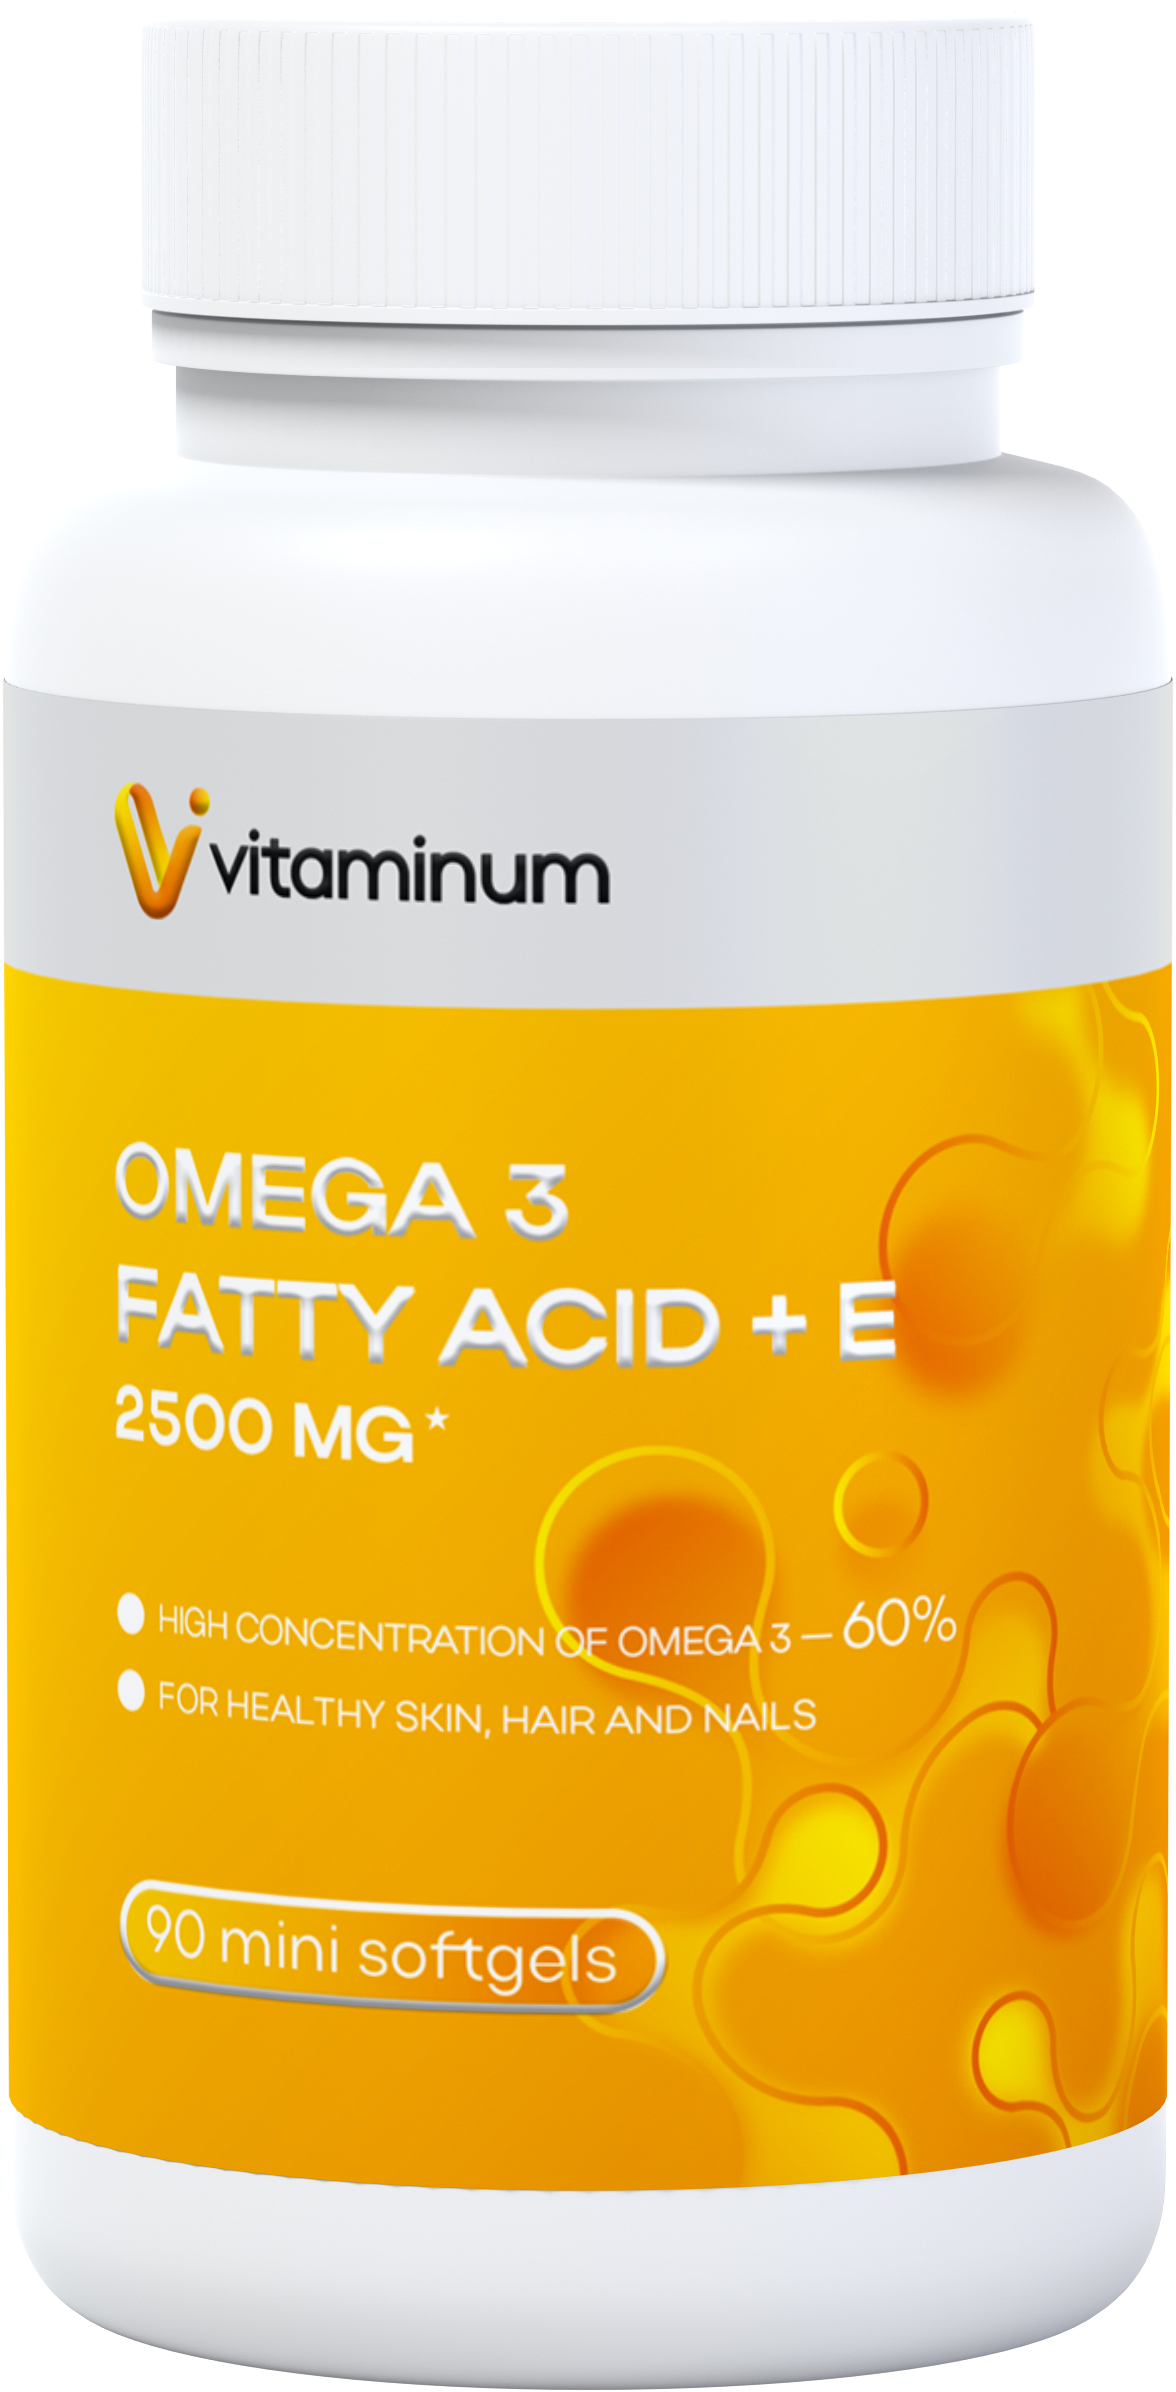  Vitaminum ОМЕГА 3 60% + витамин Е (2500 MG*) 90 капсул 700 мг   в Кирове